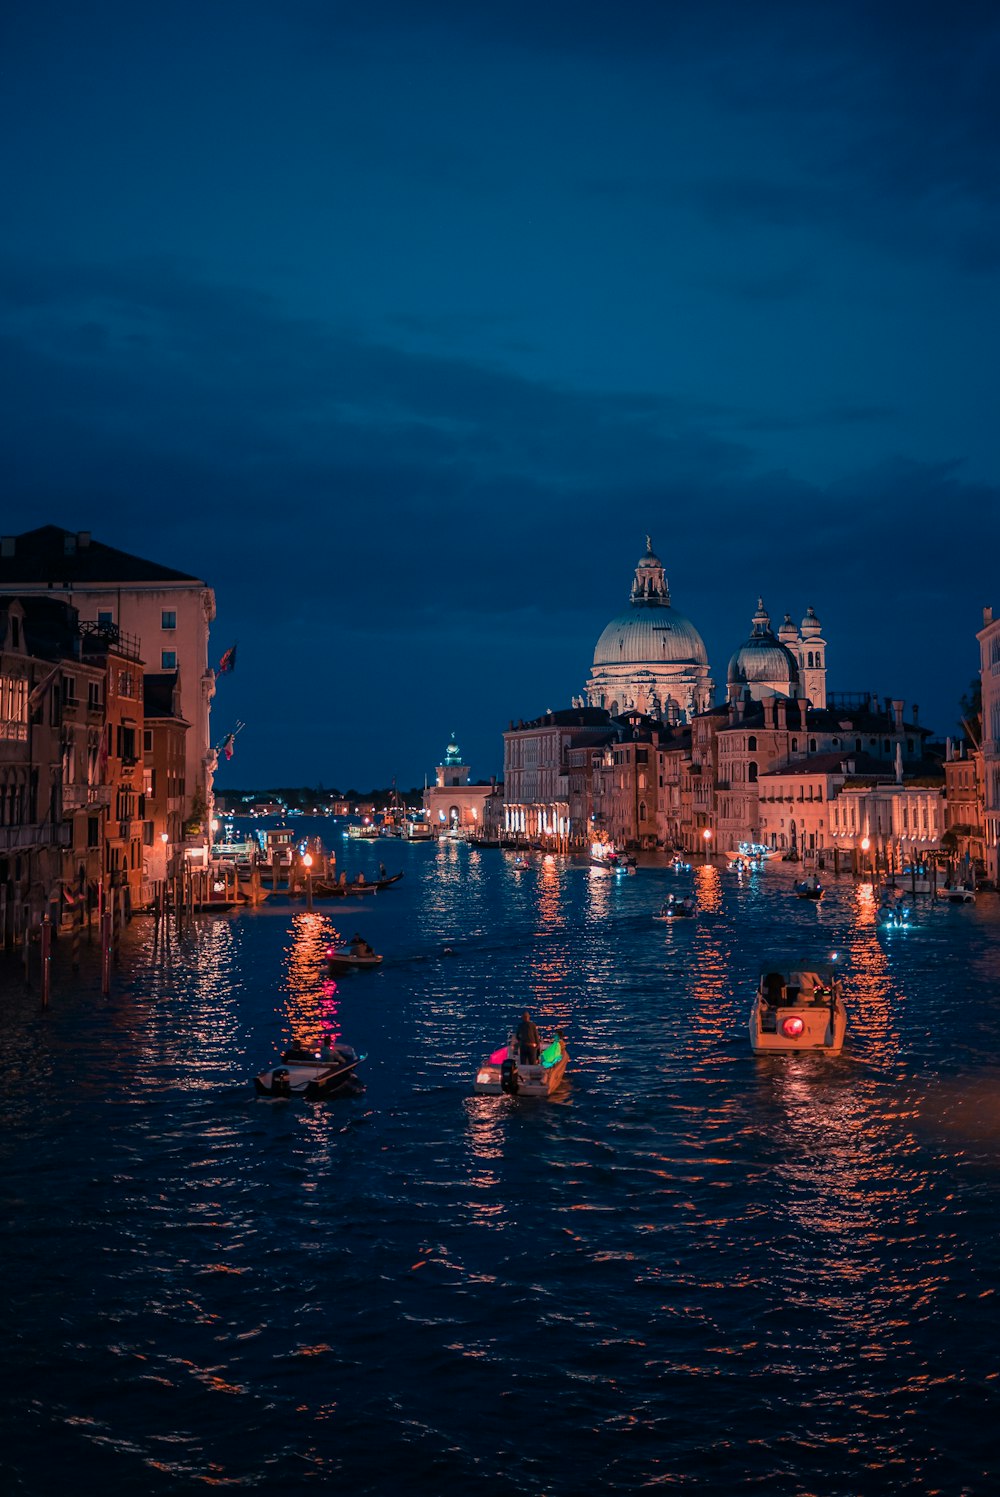 personnes se promenant sur un bateau sur la rivière près des bâtiments pendant la nuit